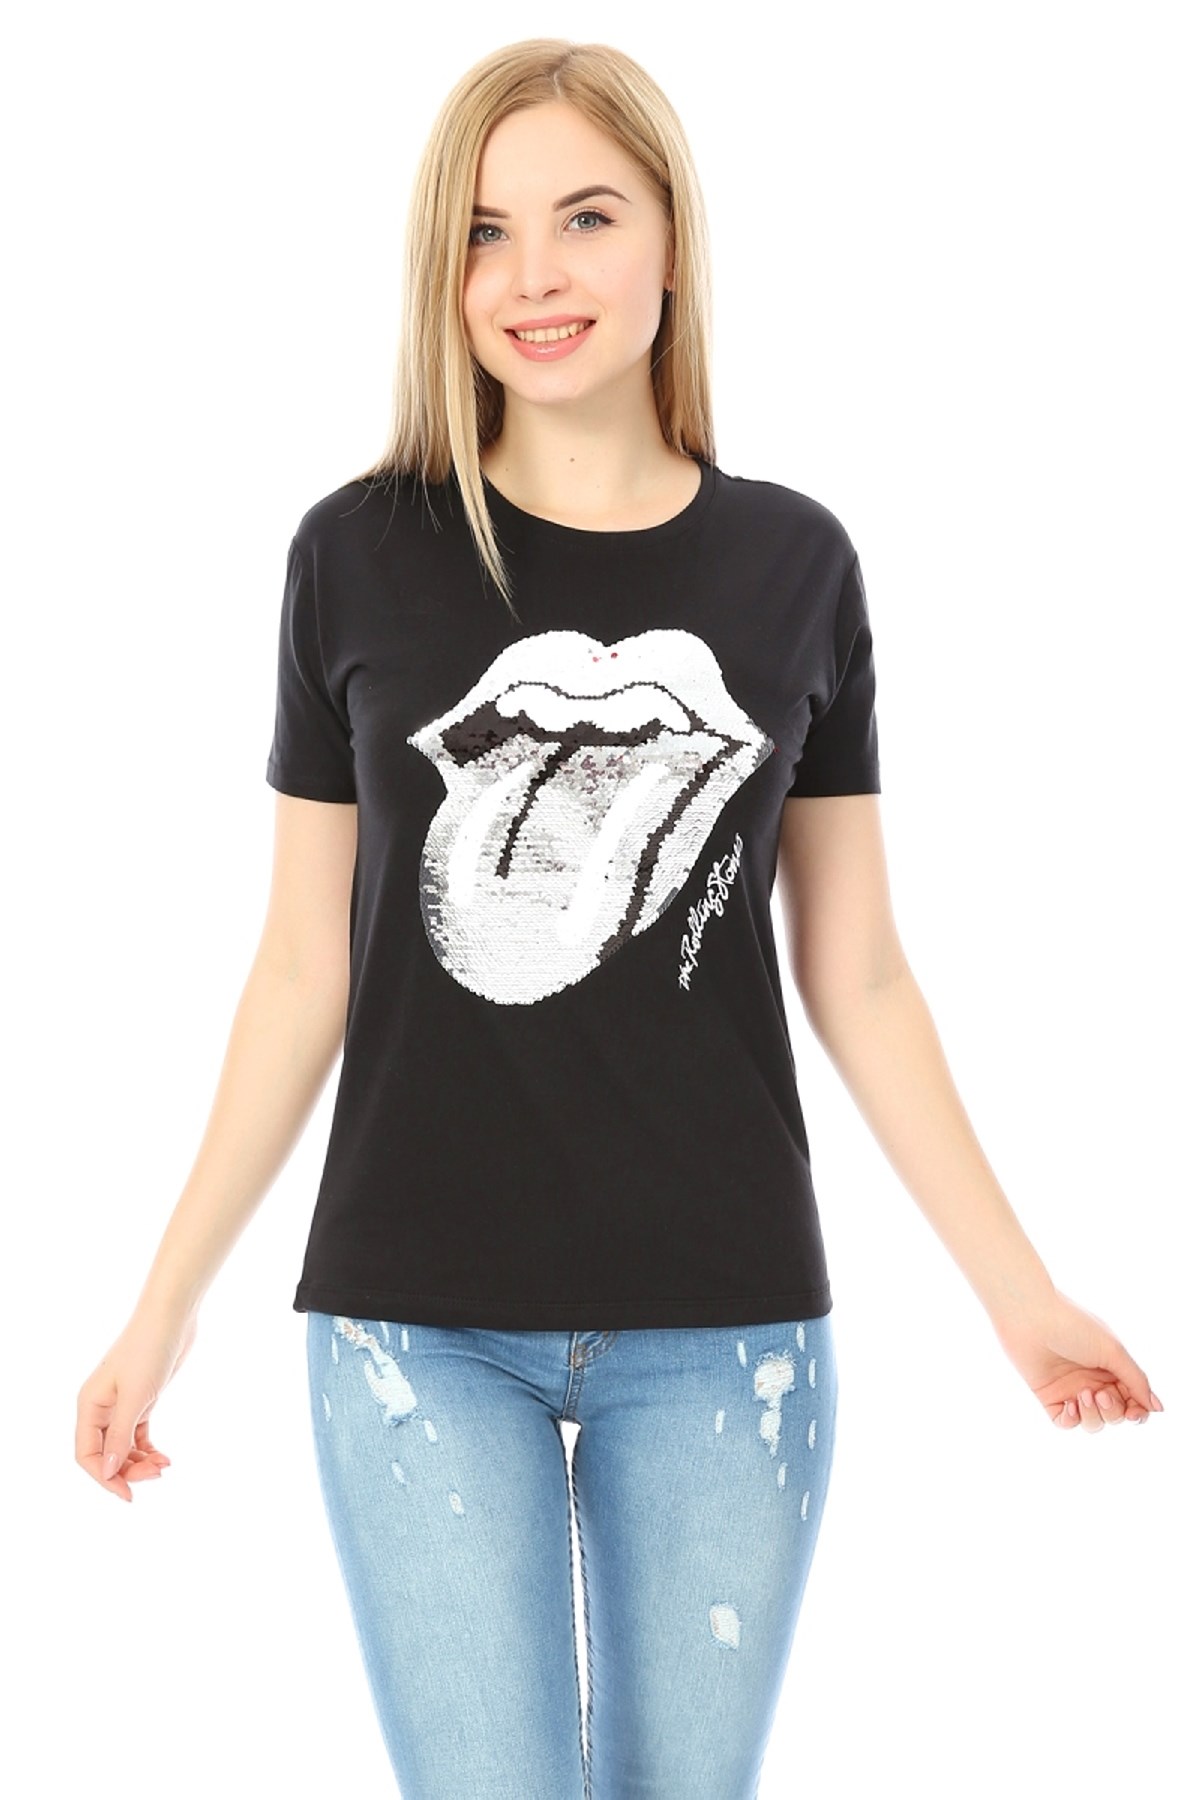 Önü Rolling Stones Pul Payet Baskılı Siyah T-shirt